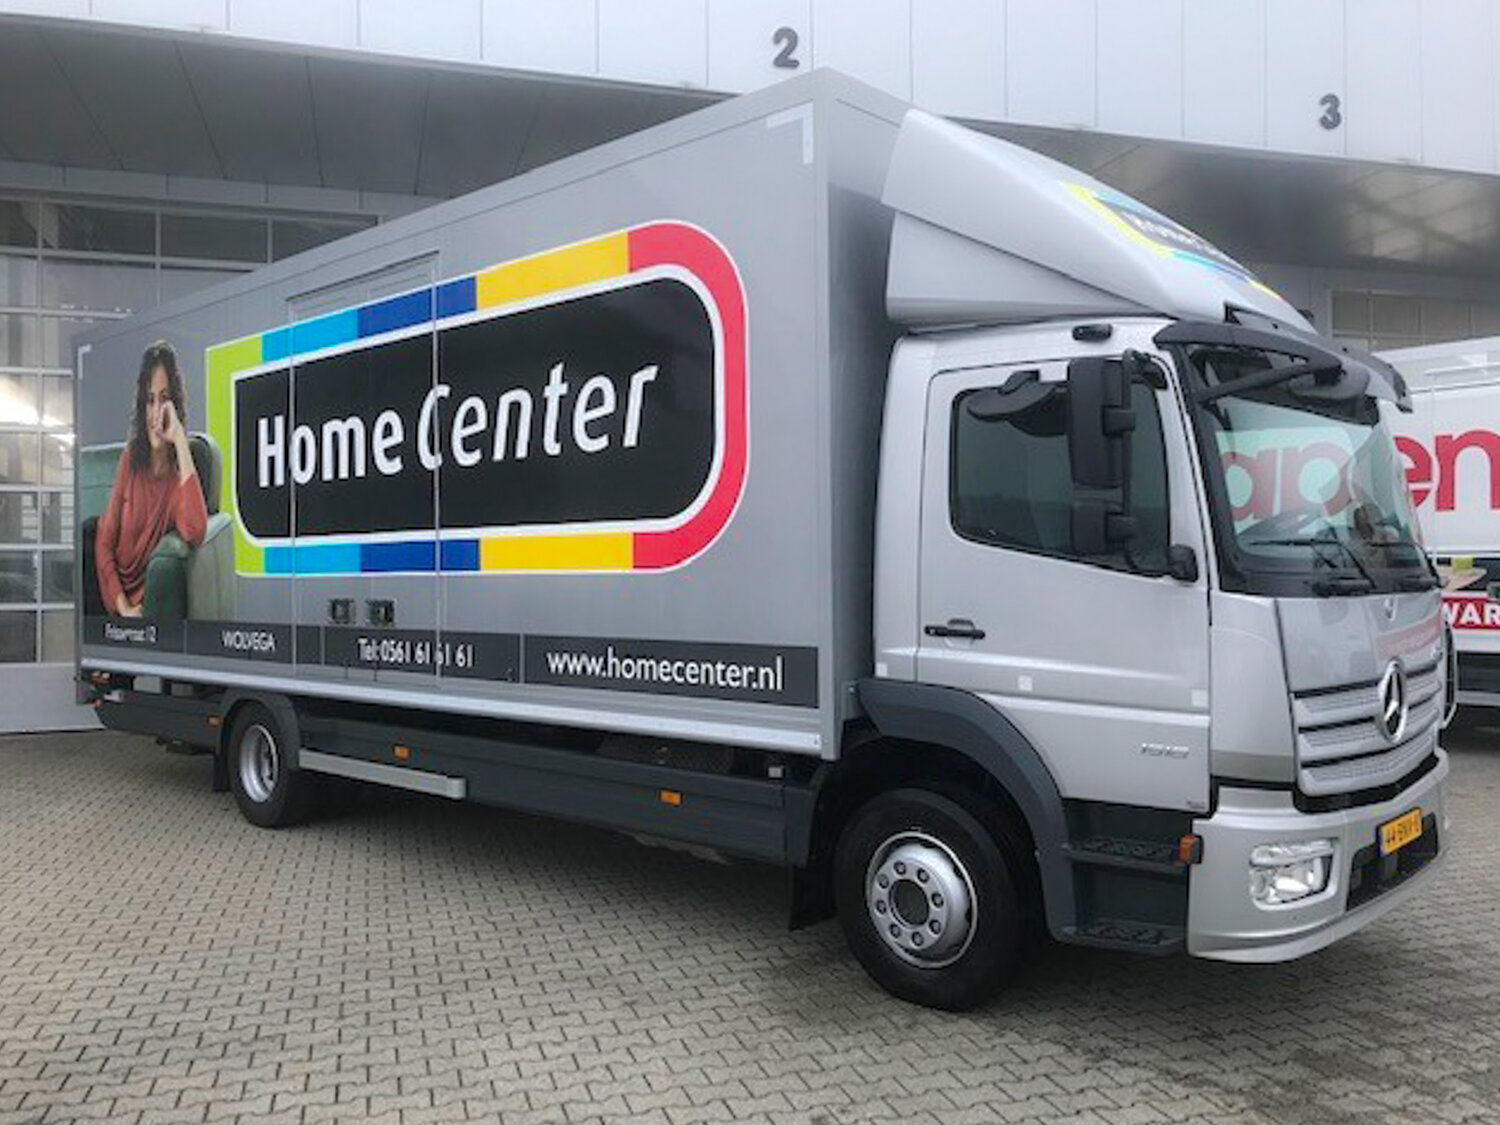 Home center truck, voorzien van belettering